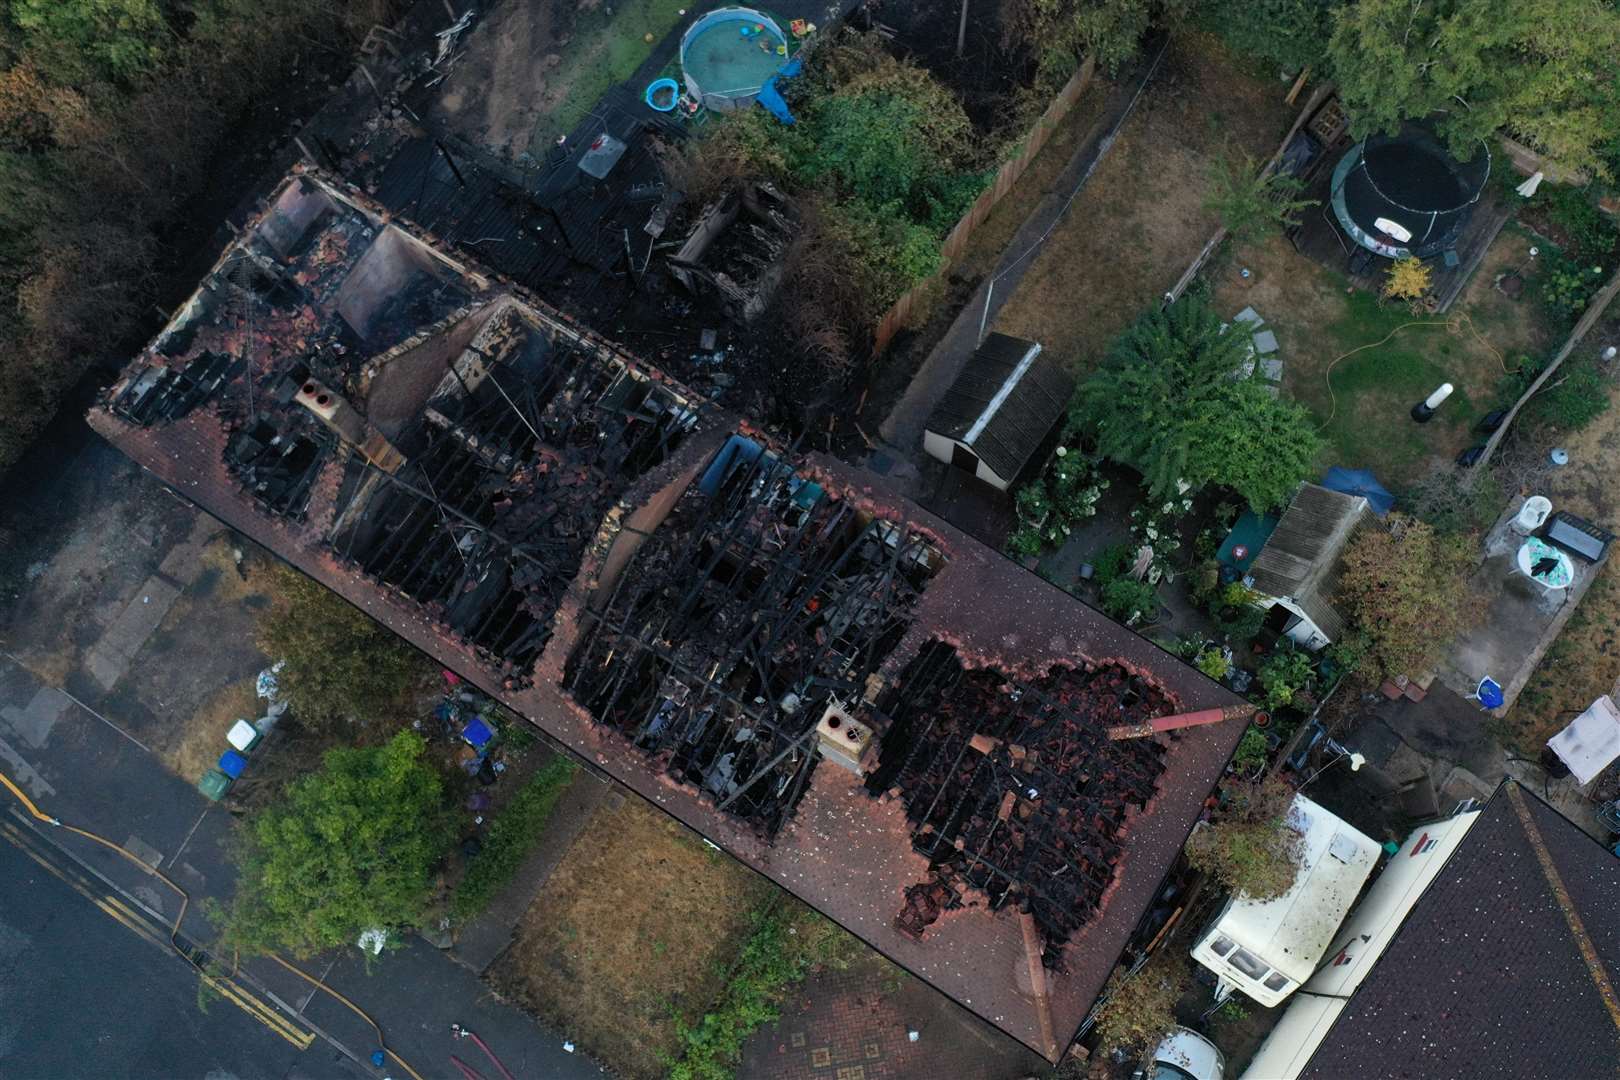 Four homes were ravaged by the blaze in Crayford Way, Crayford, near Dartford. Photo: UKNIP